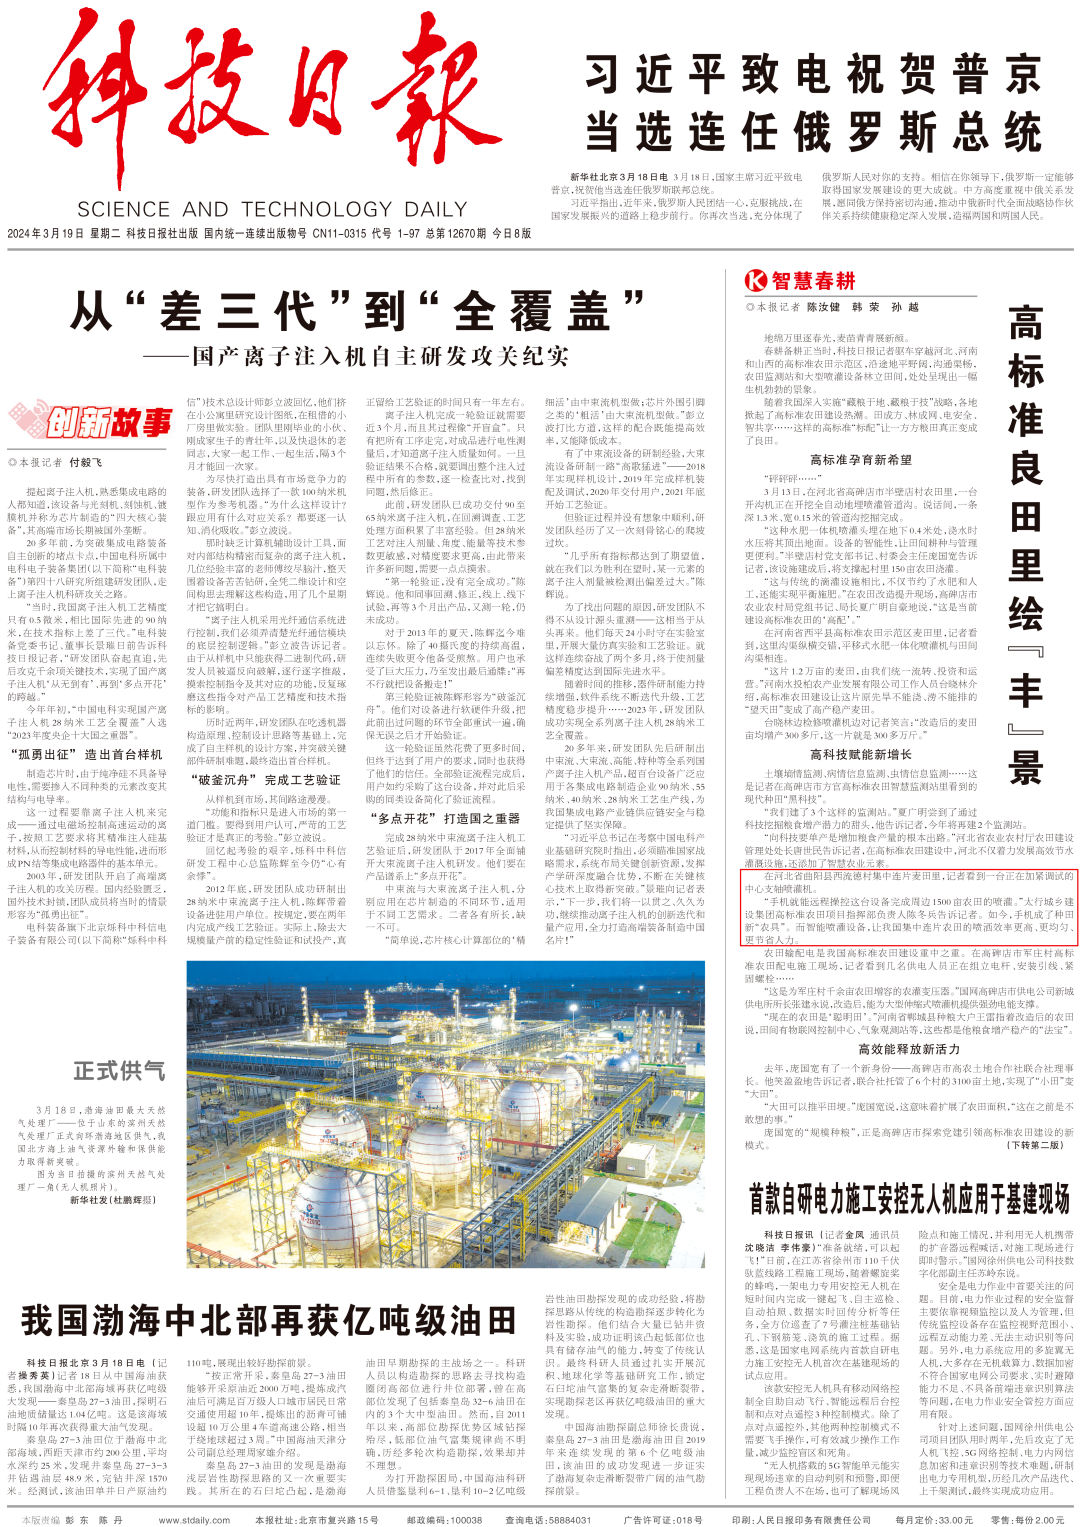 《科技日报》头版对太行城乡建设集团高标准农田建设情况进行报道